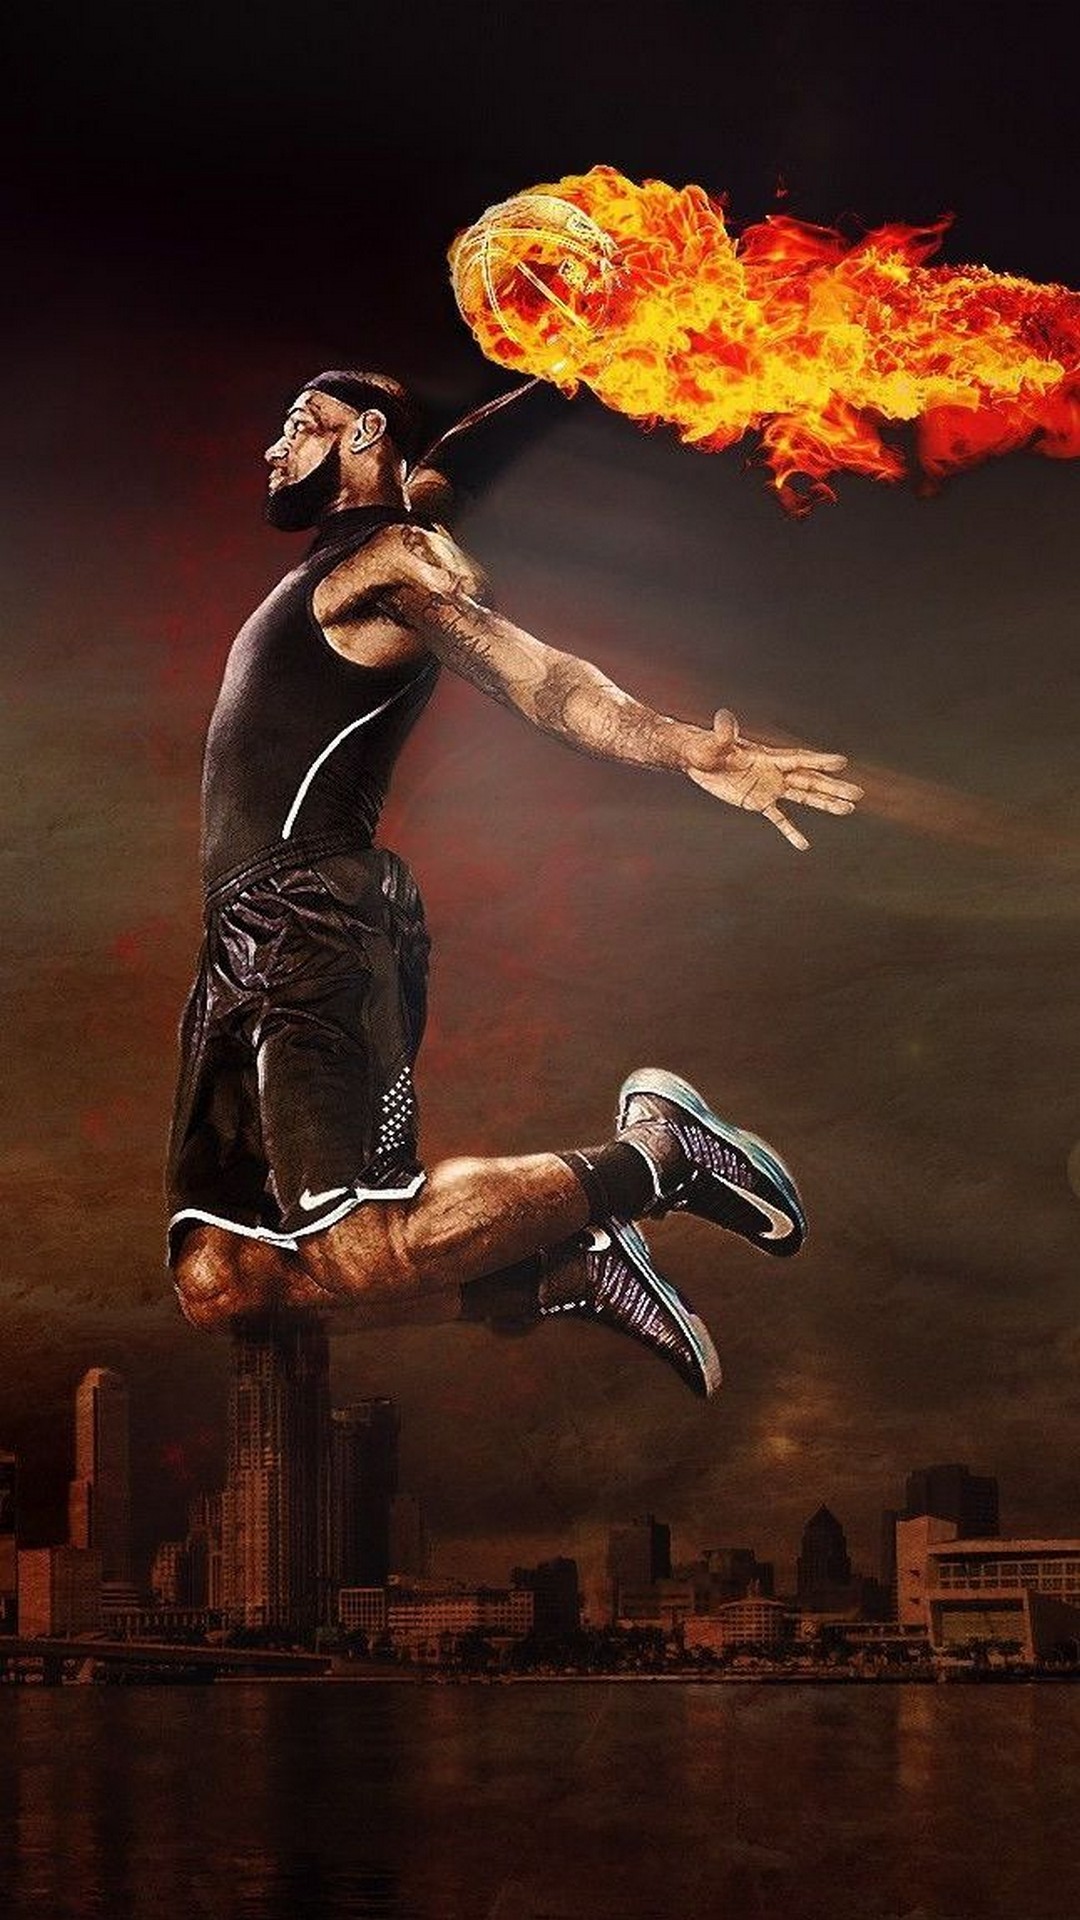 lebron james dunk wallpaper,basketball player,dancer,street dance,performance